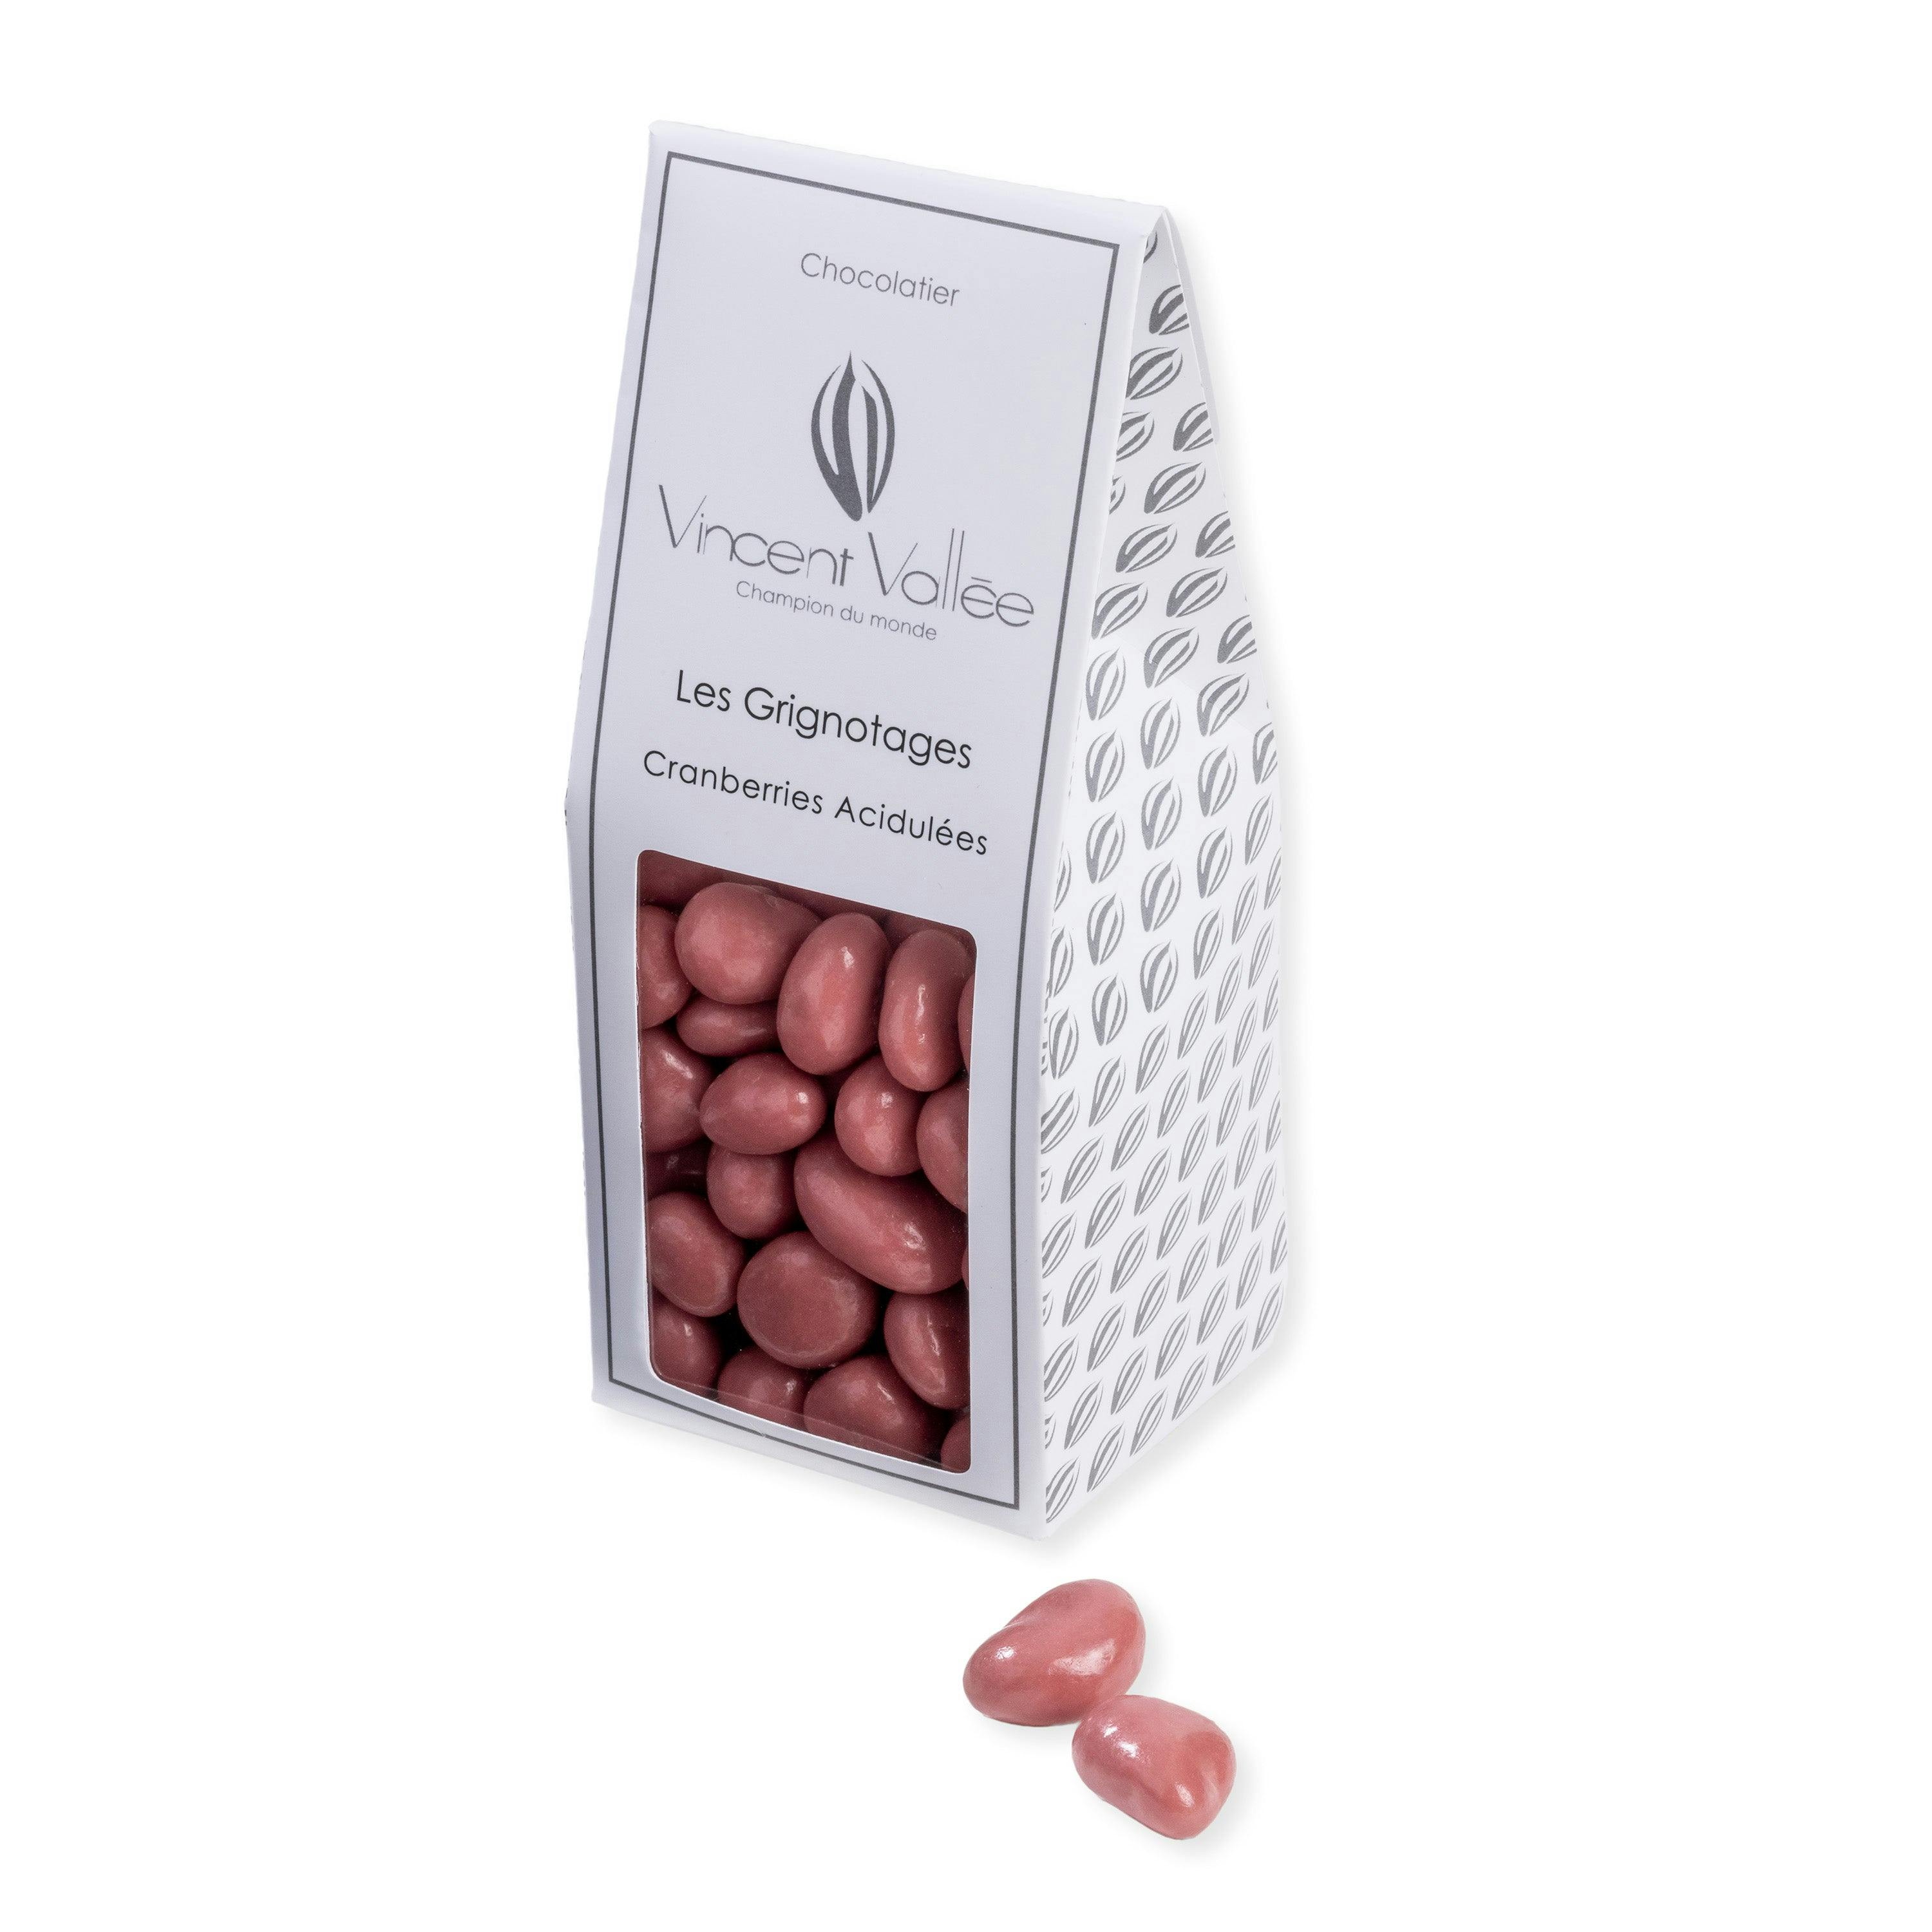 Cranberries acidulées - Vincent Vallée world champion chocolatier